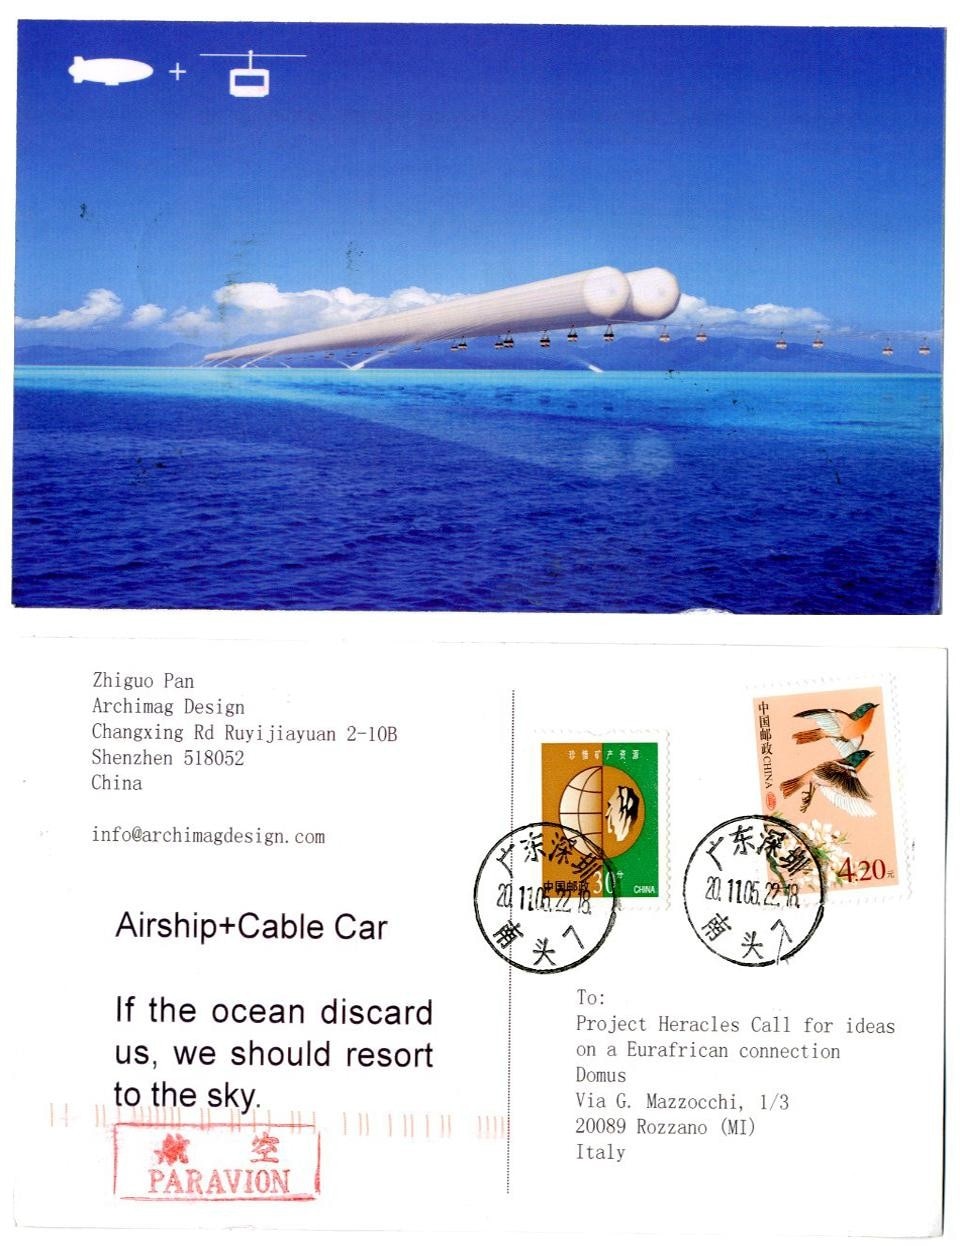 In alto: Il suk duty-free di Gibilterra. Oliver Wainwright (Regno Unito). Sopra: Aeronave + Funicolare di Zhiguo Pan. Zhiguo Pan (Cina).